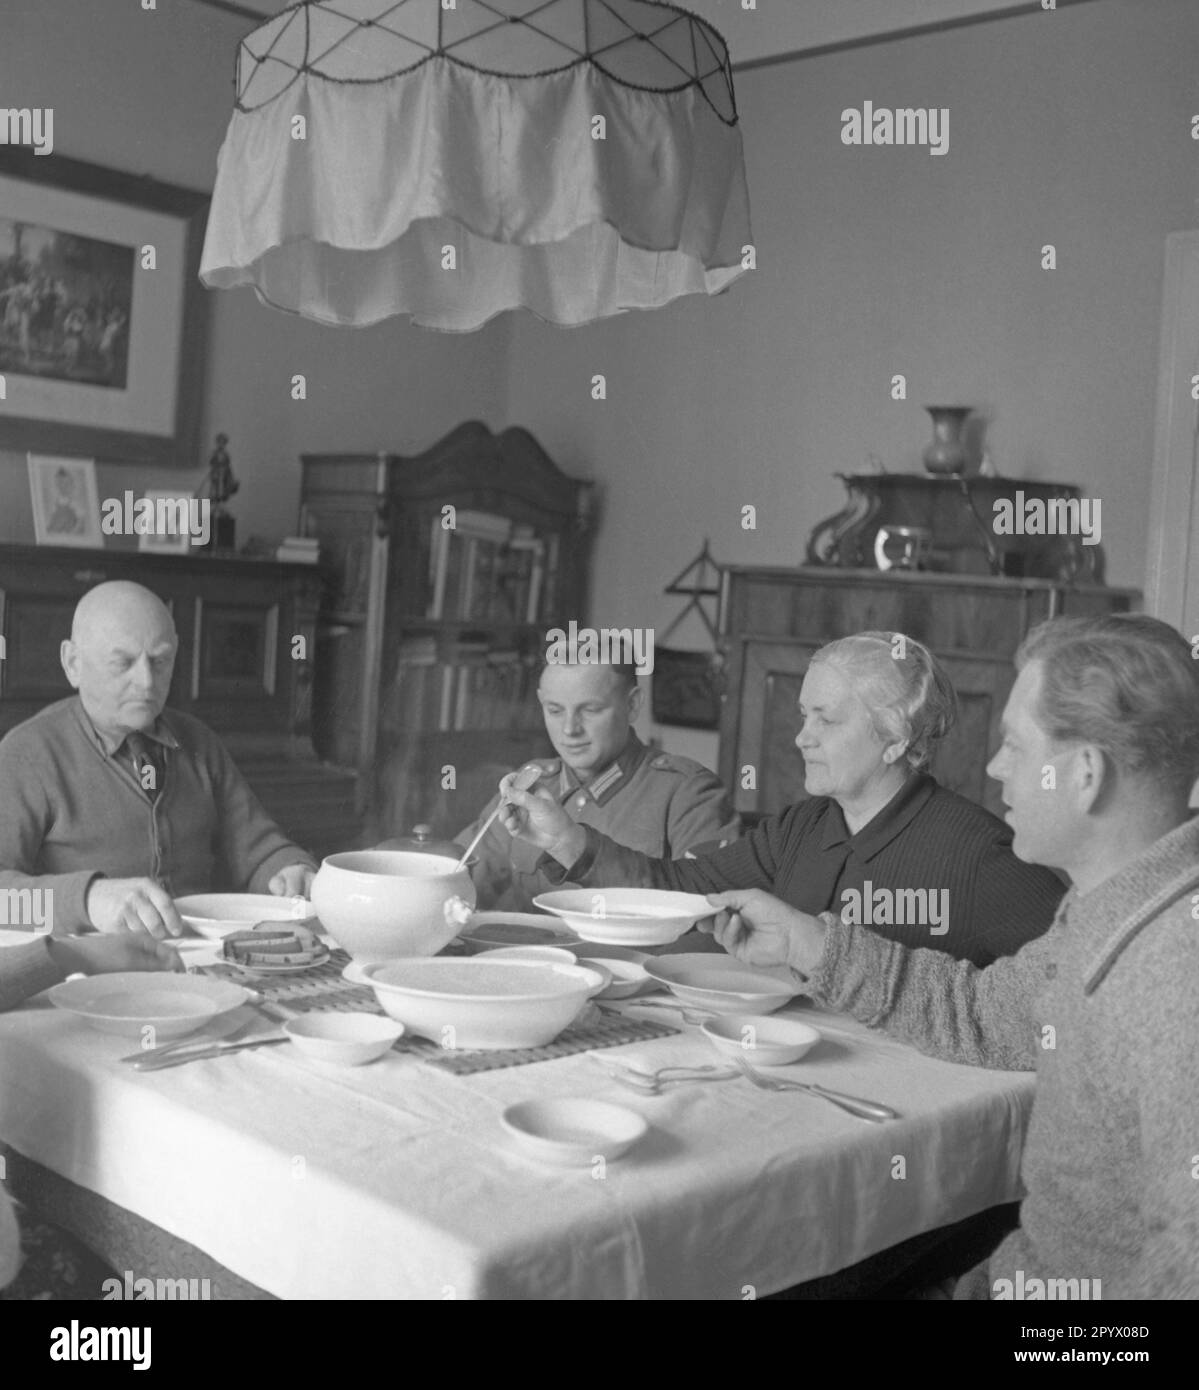 Fünf Leute sitzen an einem überdachten Esstisch, wahrscheinlich auf einer Farm in der Nähe von Neustrelitz. Eine Frau verteilt Essen aus einer Suppenschüssel. Unbefristetes Foto. Stockfoto